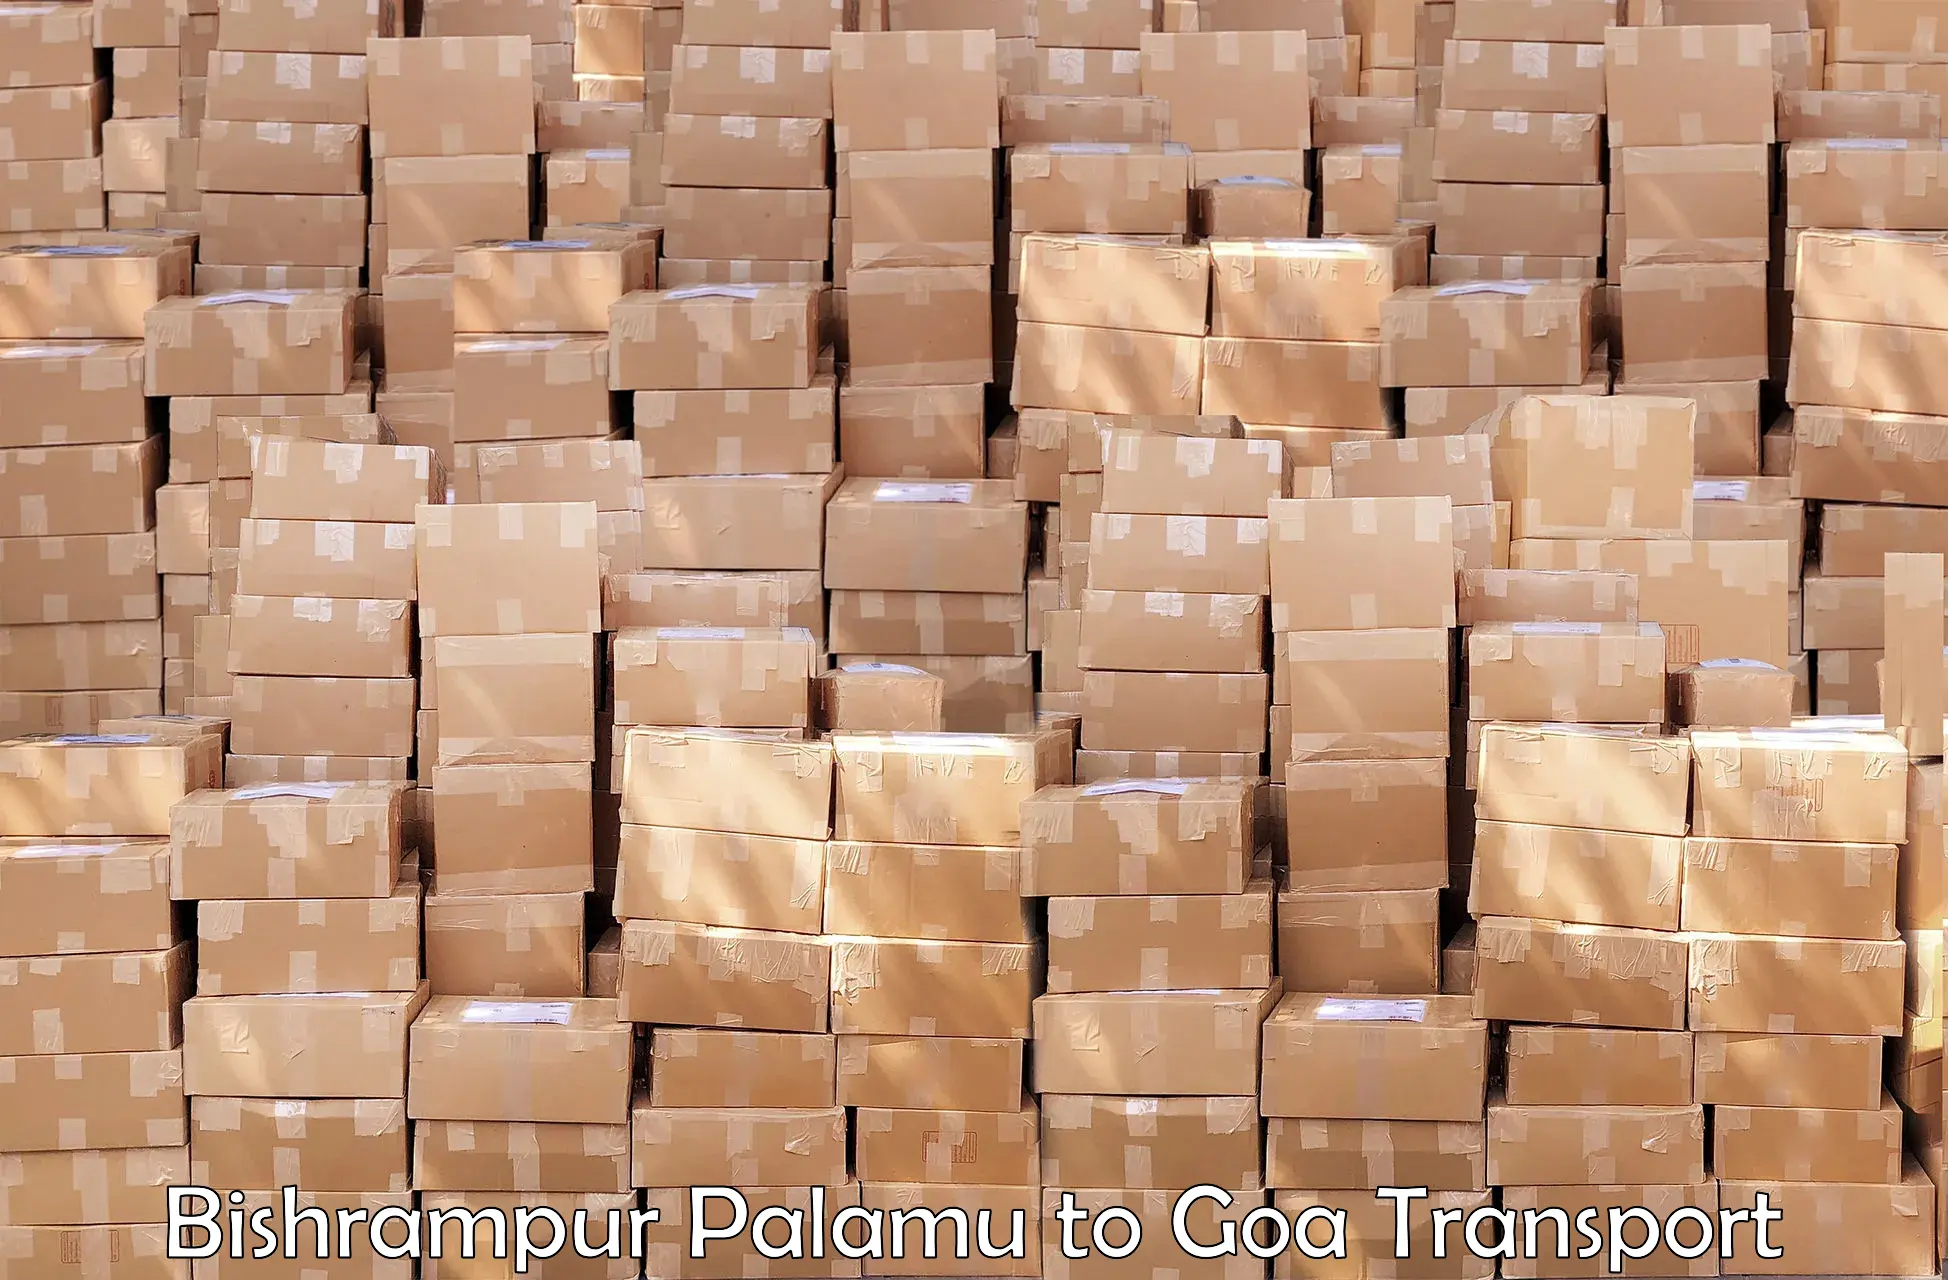 Container transport service Bishrampur Palamu to Panjim